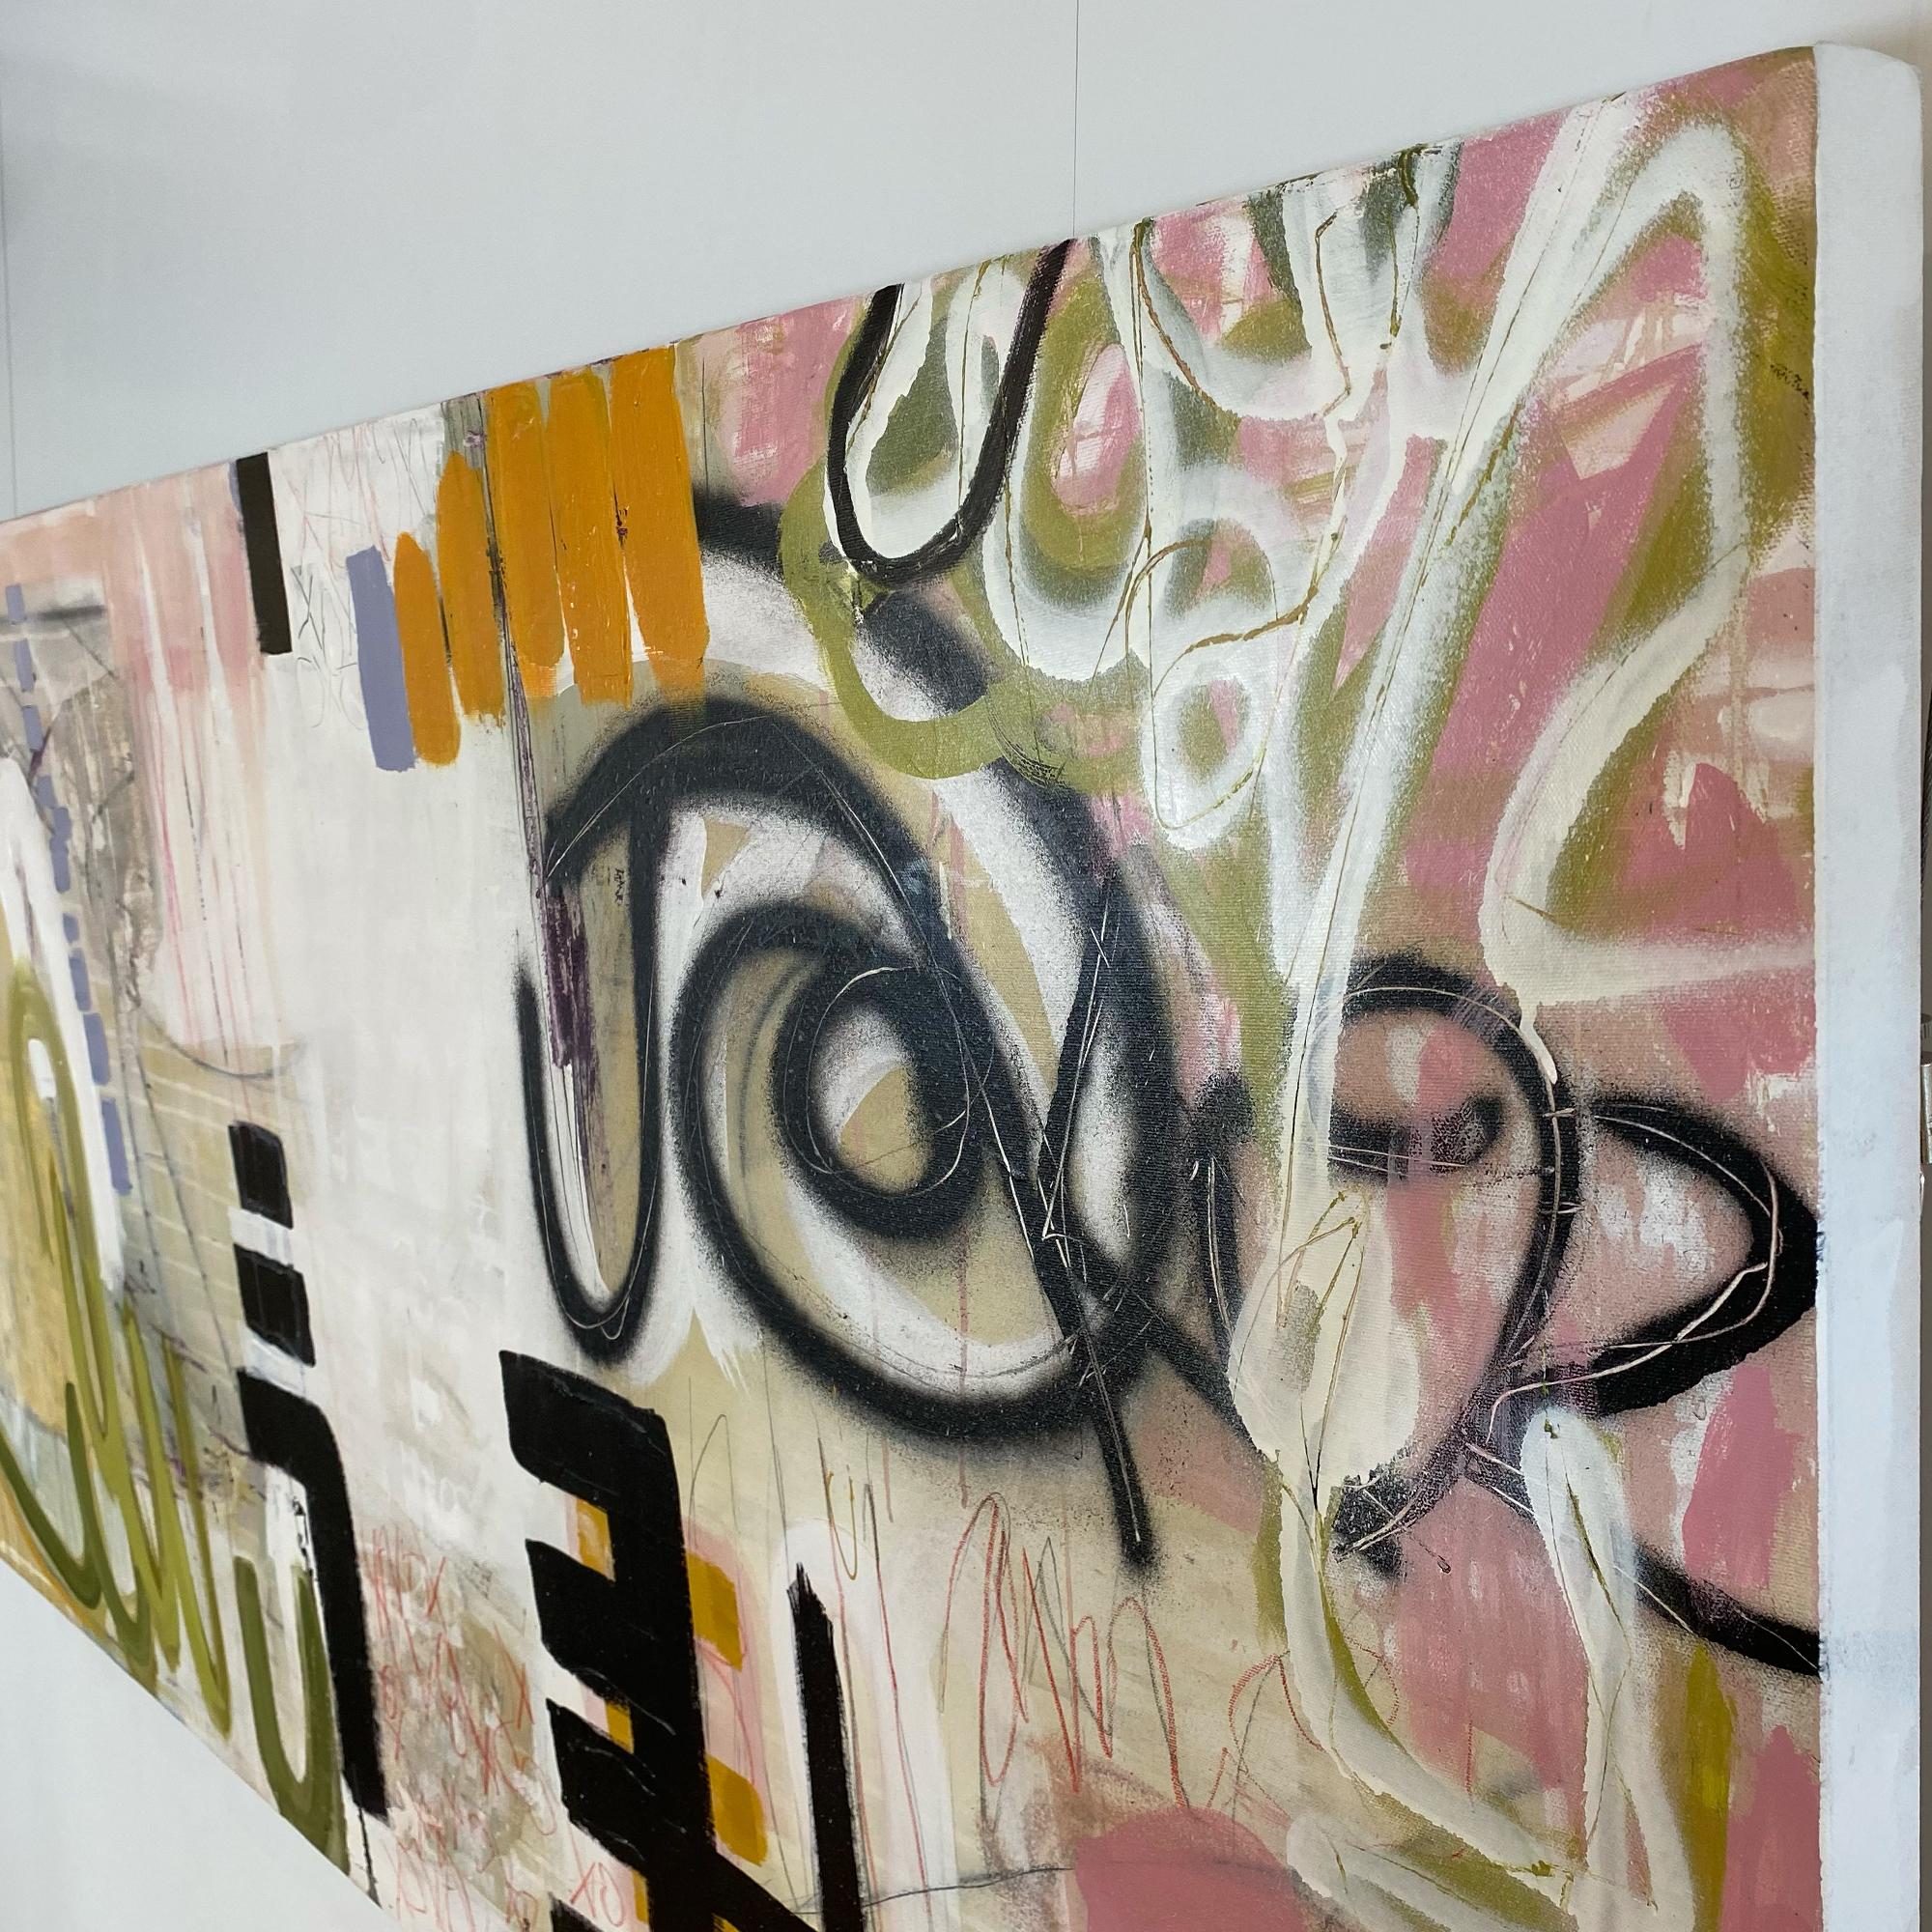 Creating Tension, abstraktes Gemälde in Mischtechnik auf Leinwand, weiches Rosa, Beige  – Painting von Suzanne Metz